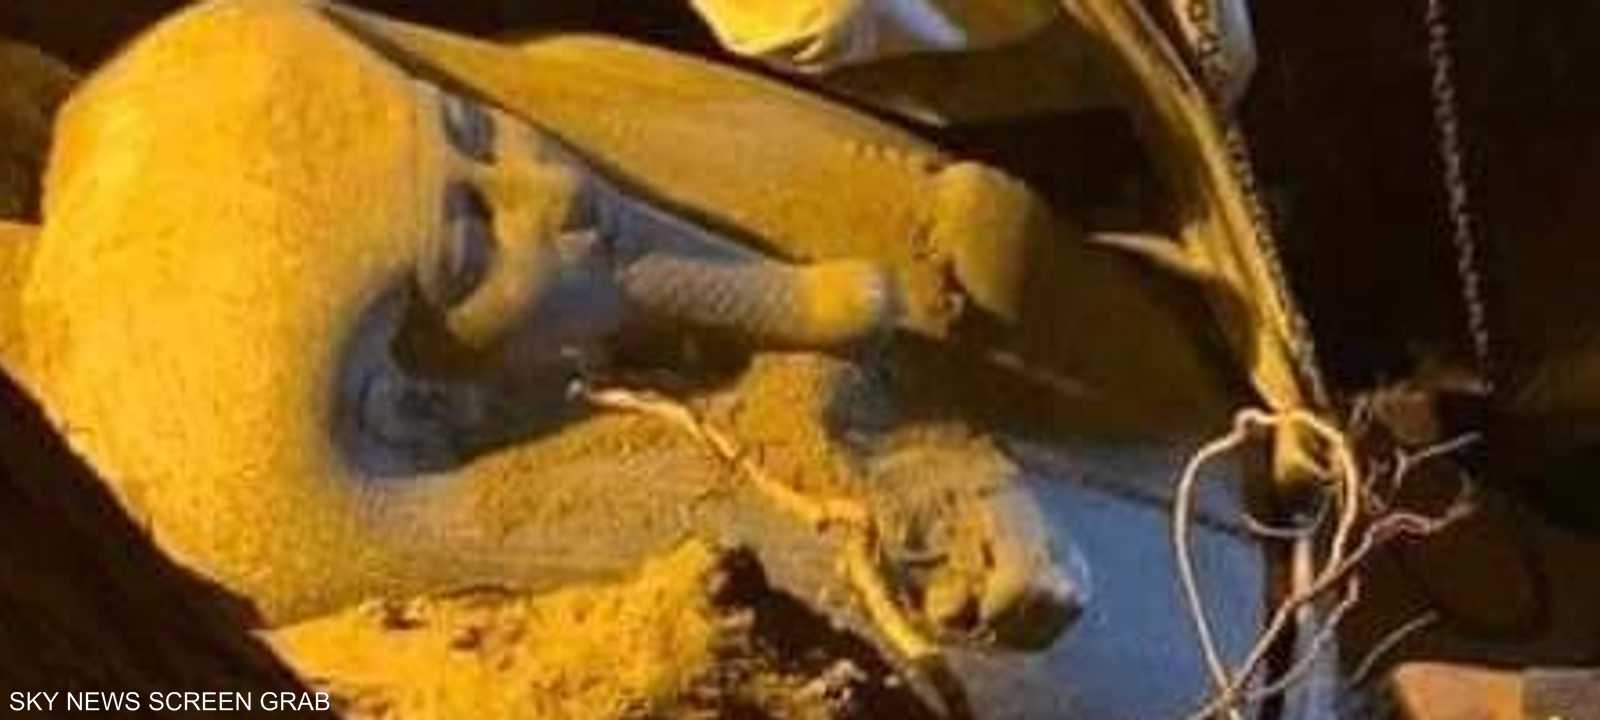 السلطات اكتشفت مقبرة فرعونية في موقع الحفر